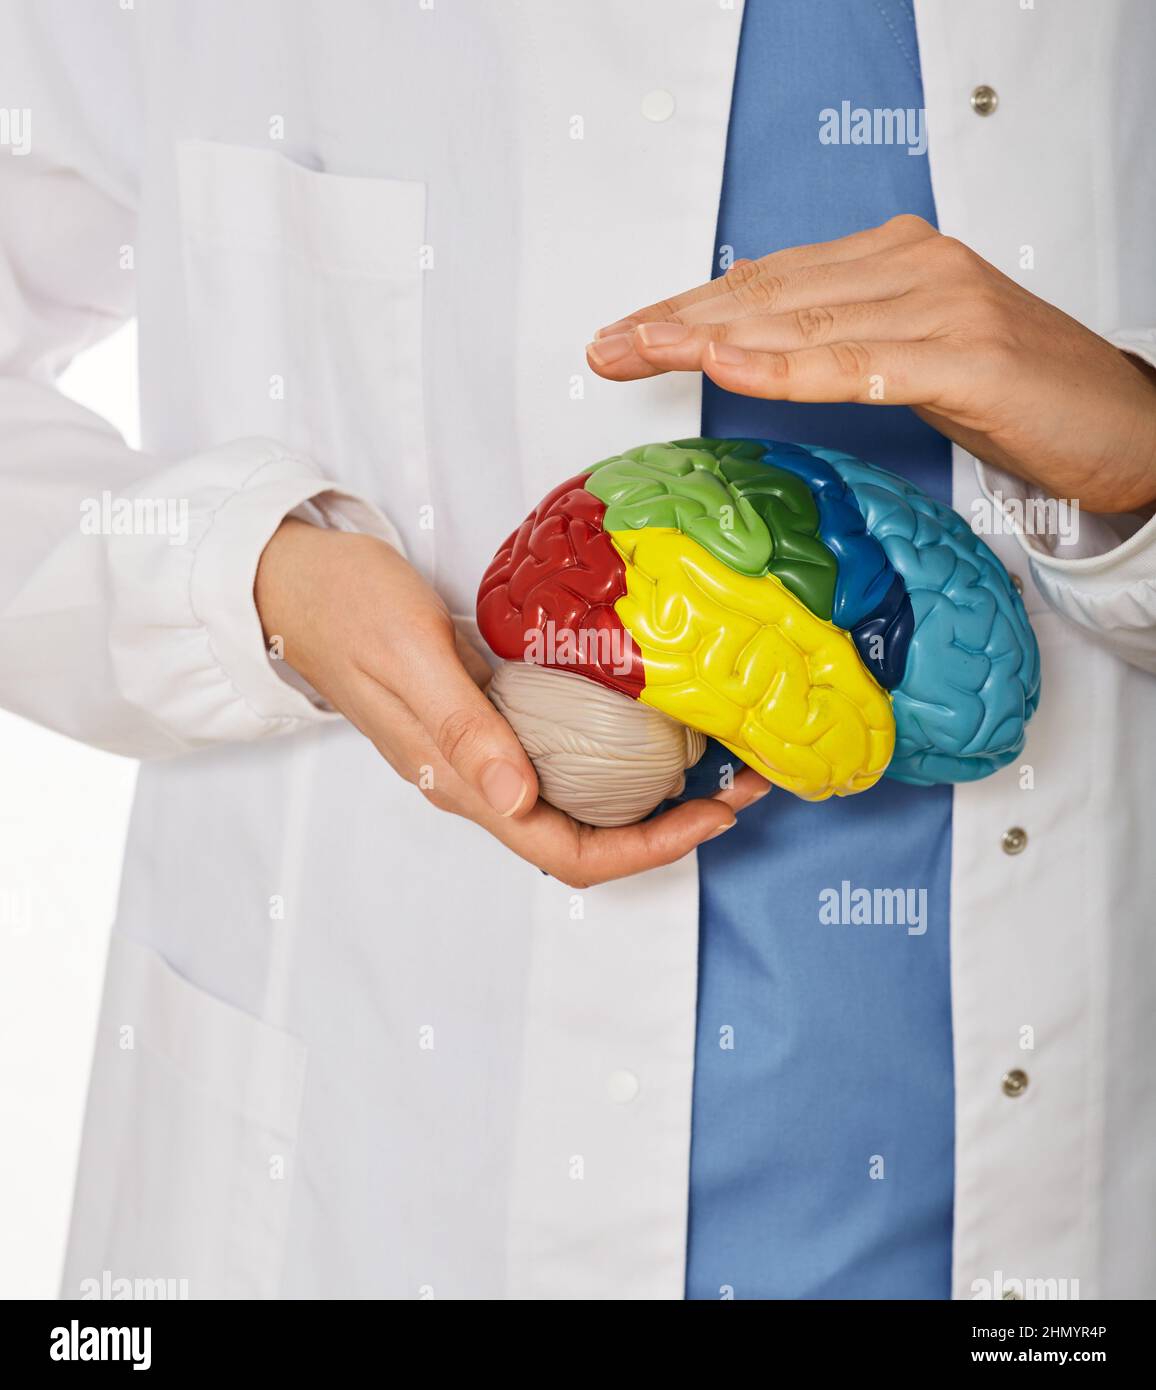 Anatomisches Modell des menschlichen Gehirns in den Händen des Arztes, das die medizinische Versorgung zeigt. Diagnostik und Behandlung von Hirnerkrankungen, Kopfschmerzen und Gehirn Stockfoto